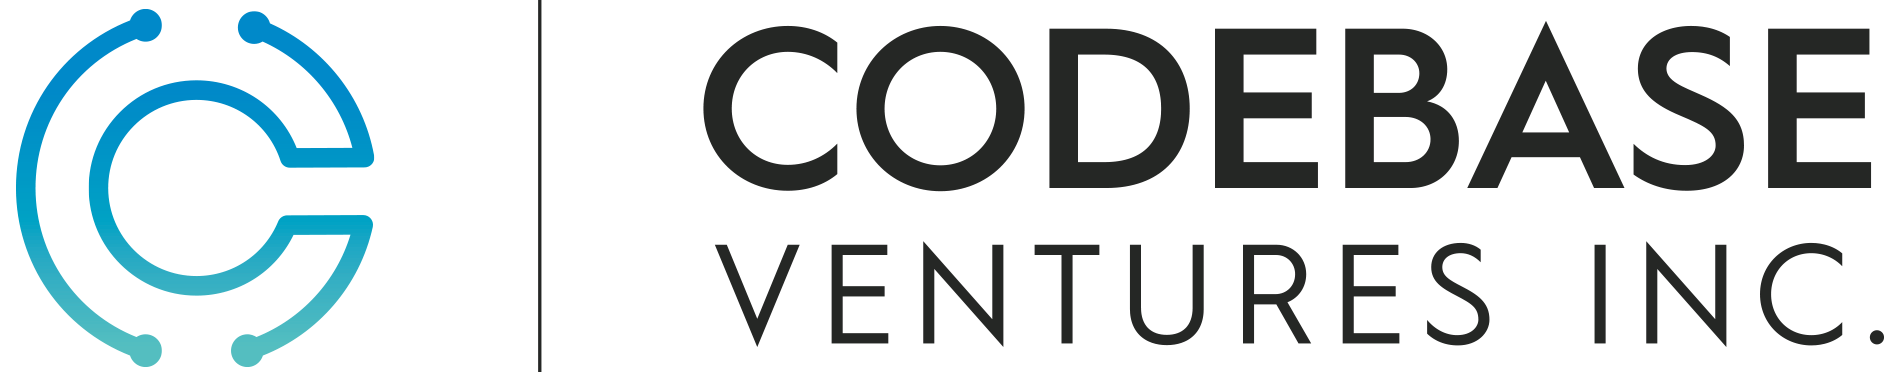 Codebase Ventures